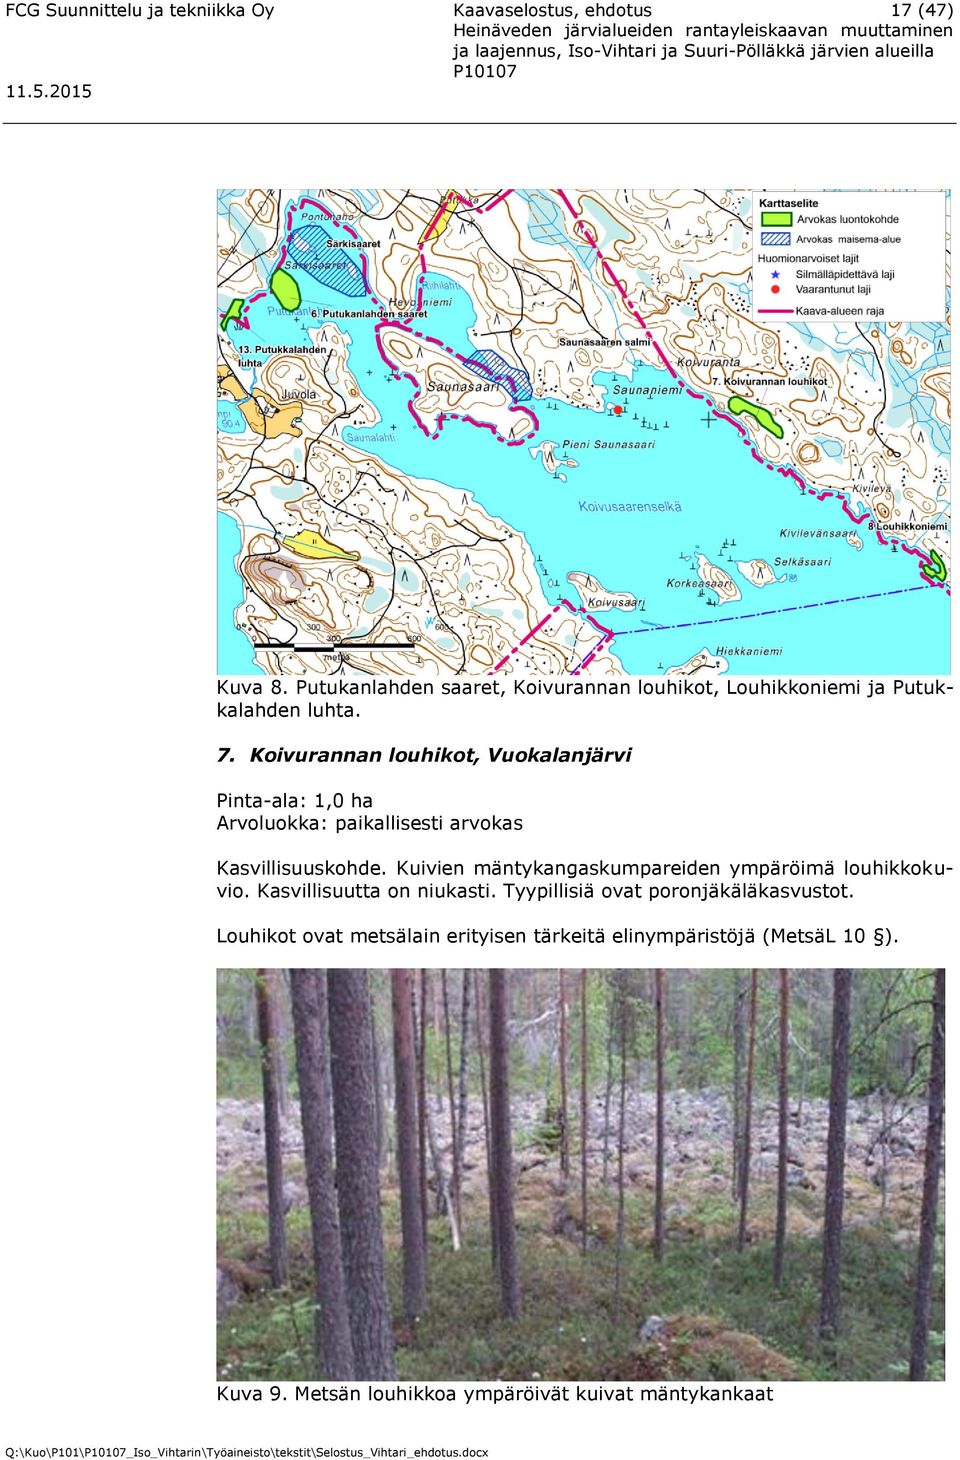 Koivurannan louhikot, Vuokalanjärvi Pinta-ala: 1,0 ha Arvoluokka: paikallisesti arvokas Kasvillisuuskohde.